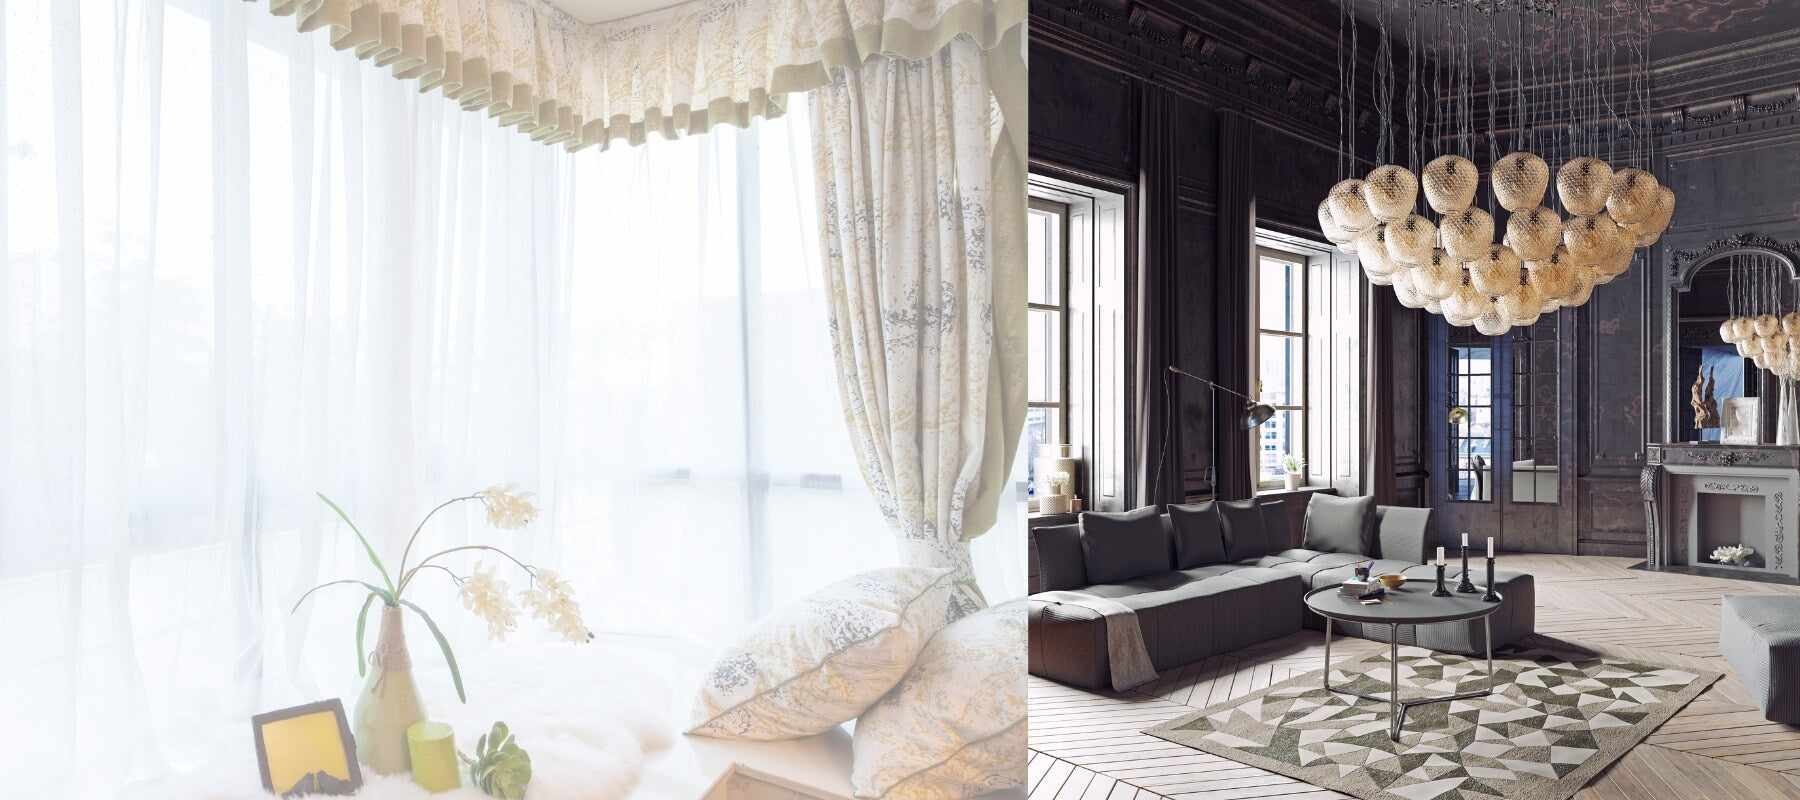 Elegant-interior-Luxury-curtain-furniture-collection-1800x800